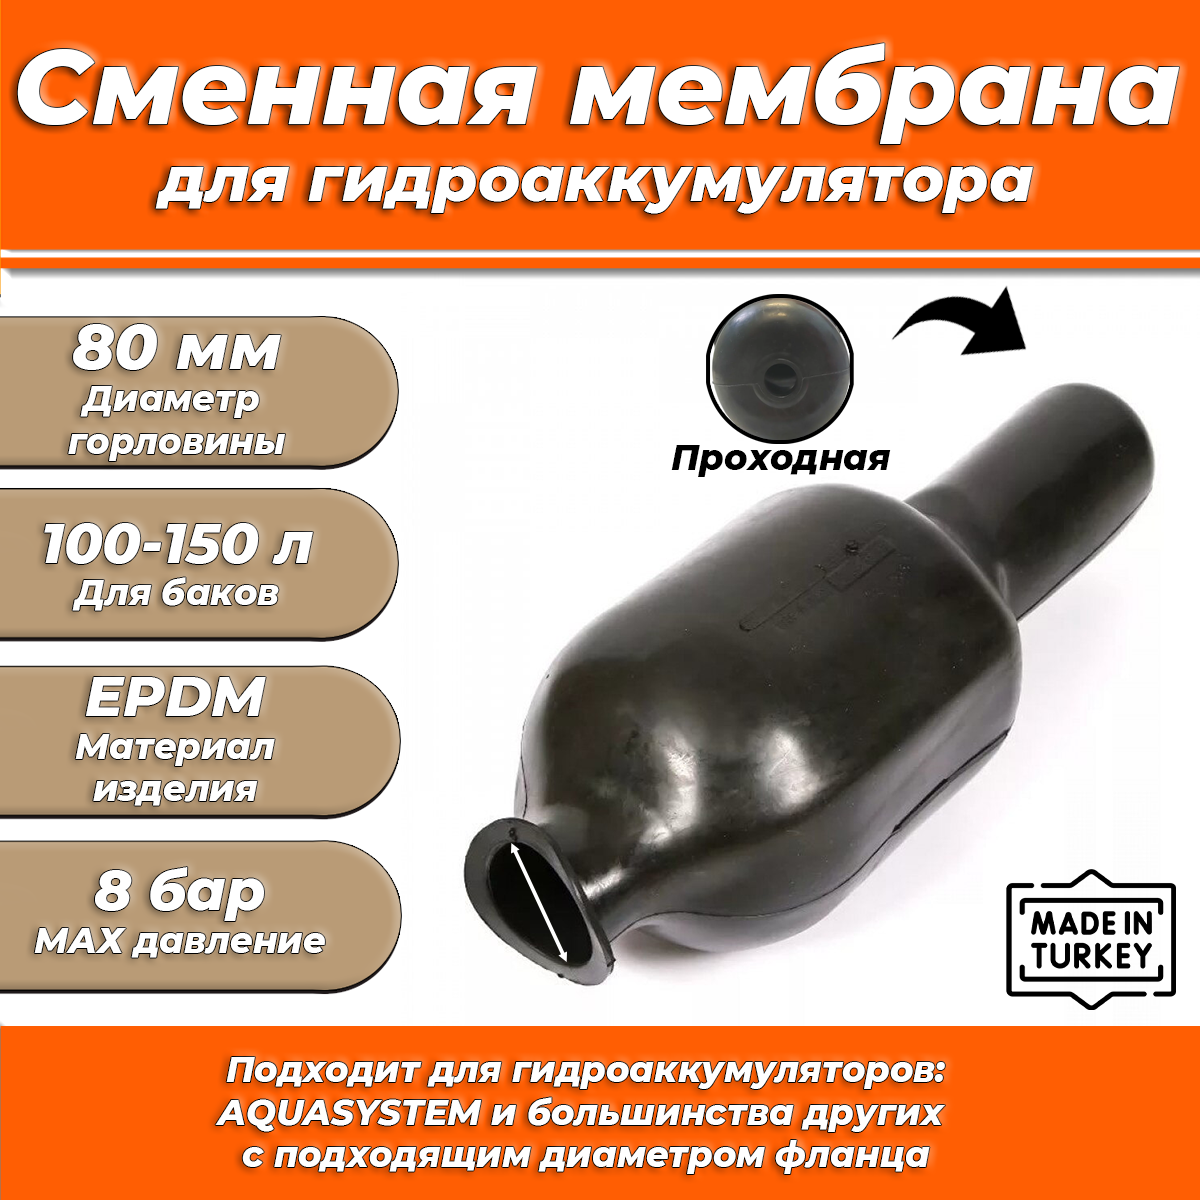 Мембрана для гидроаккумулятора Euromax 100-150 (80/110/650мм проходная)